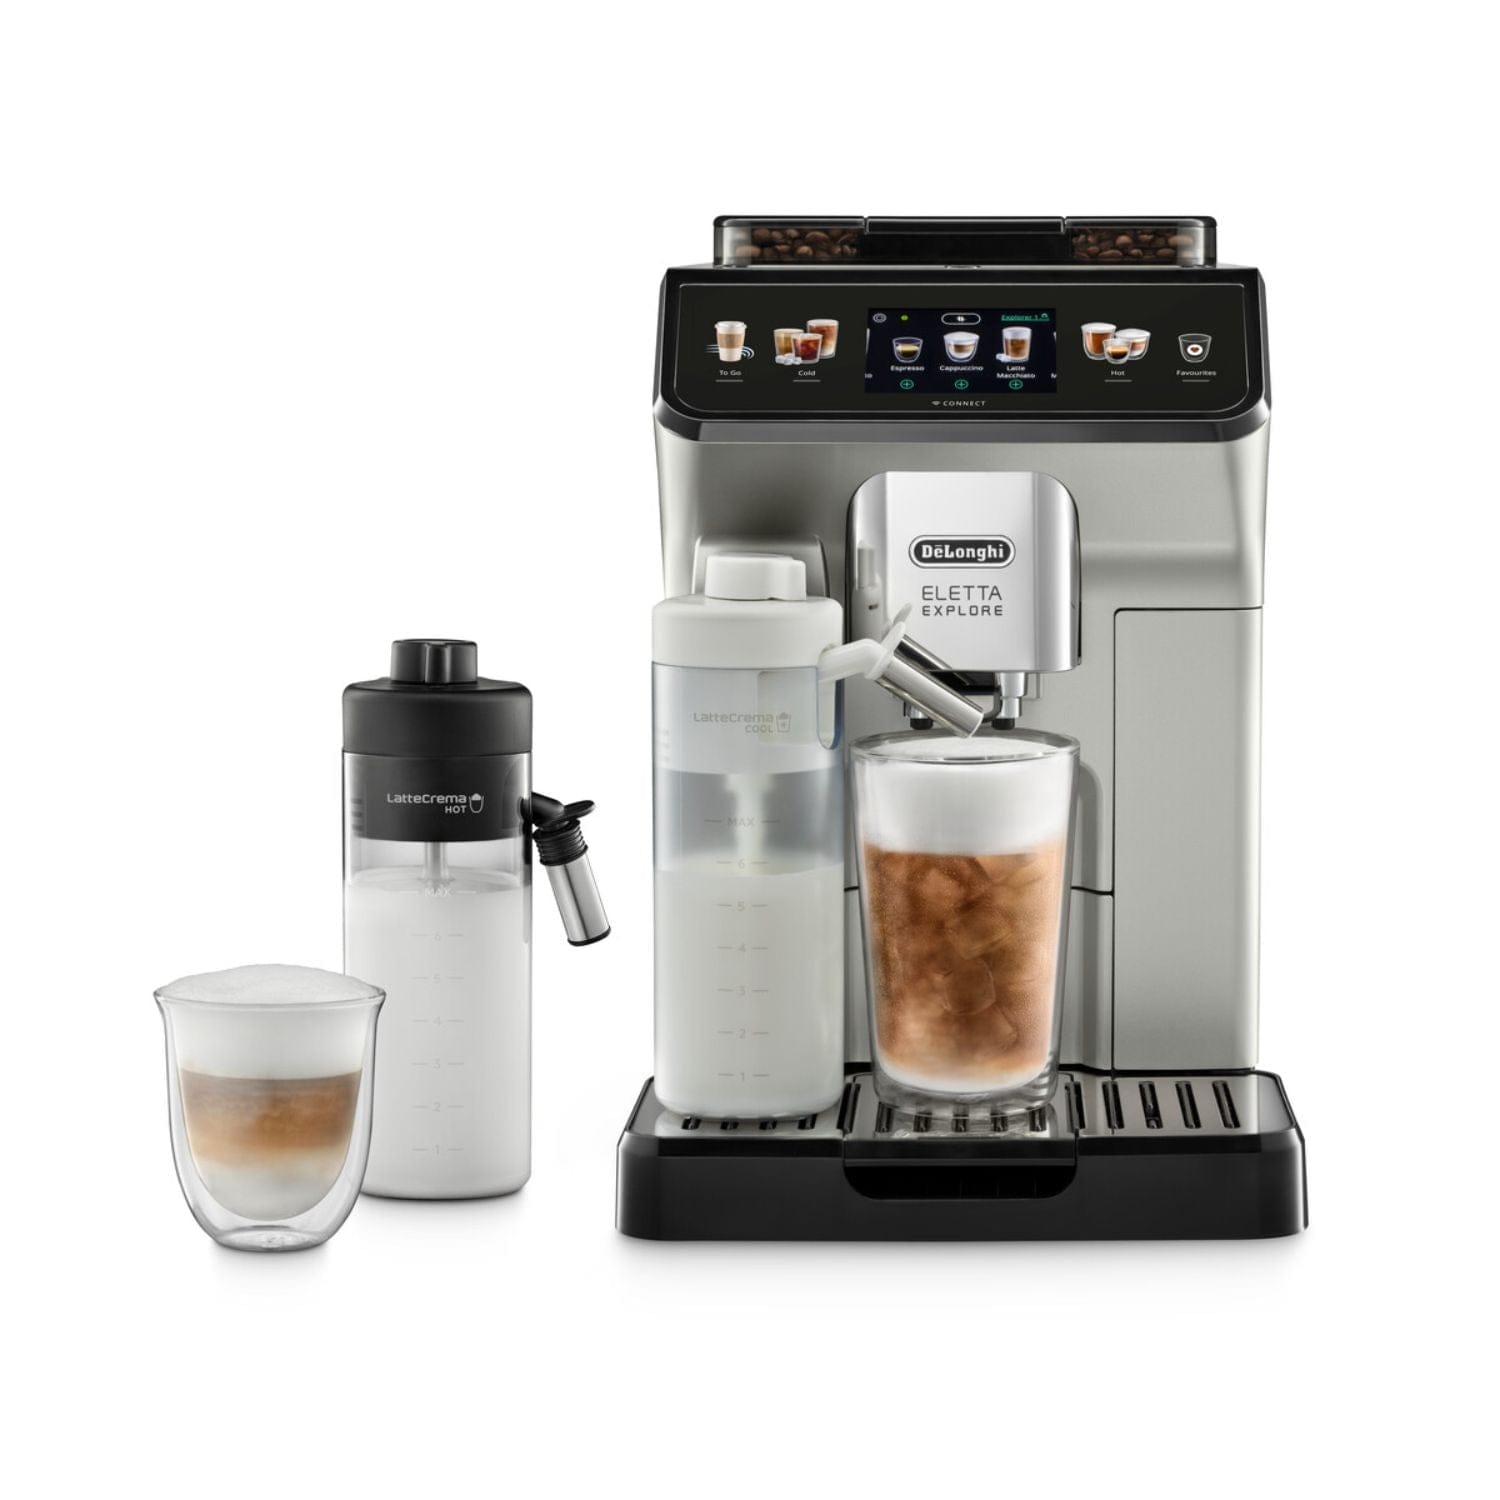 DELONGHI ELETTA EXPLORE COFFEE MACHINE SILVER - ECAM450.65.S - REGULAR